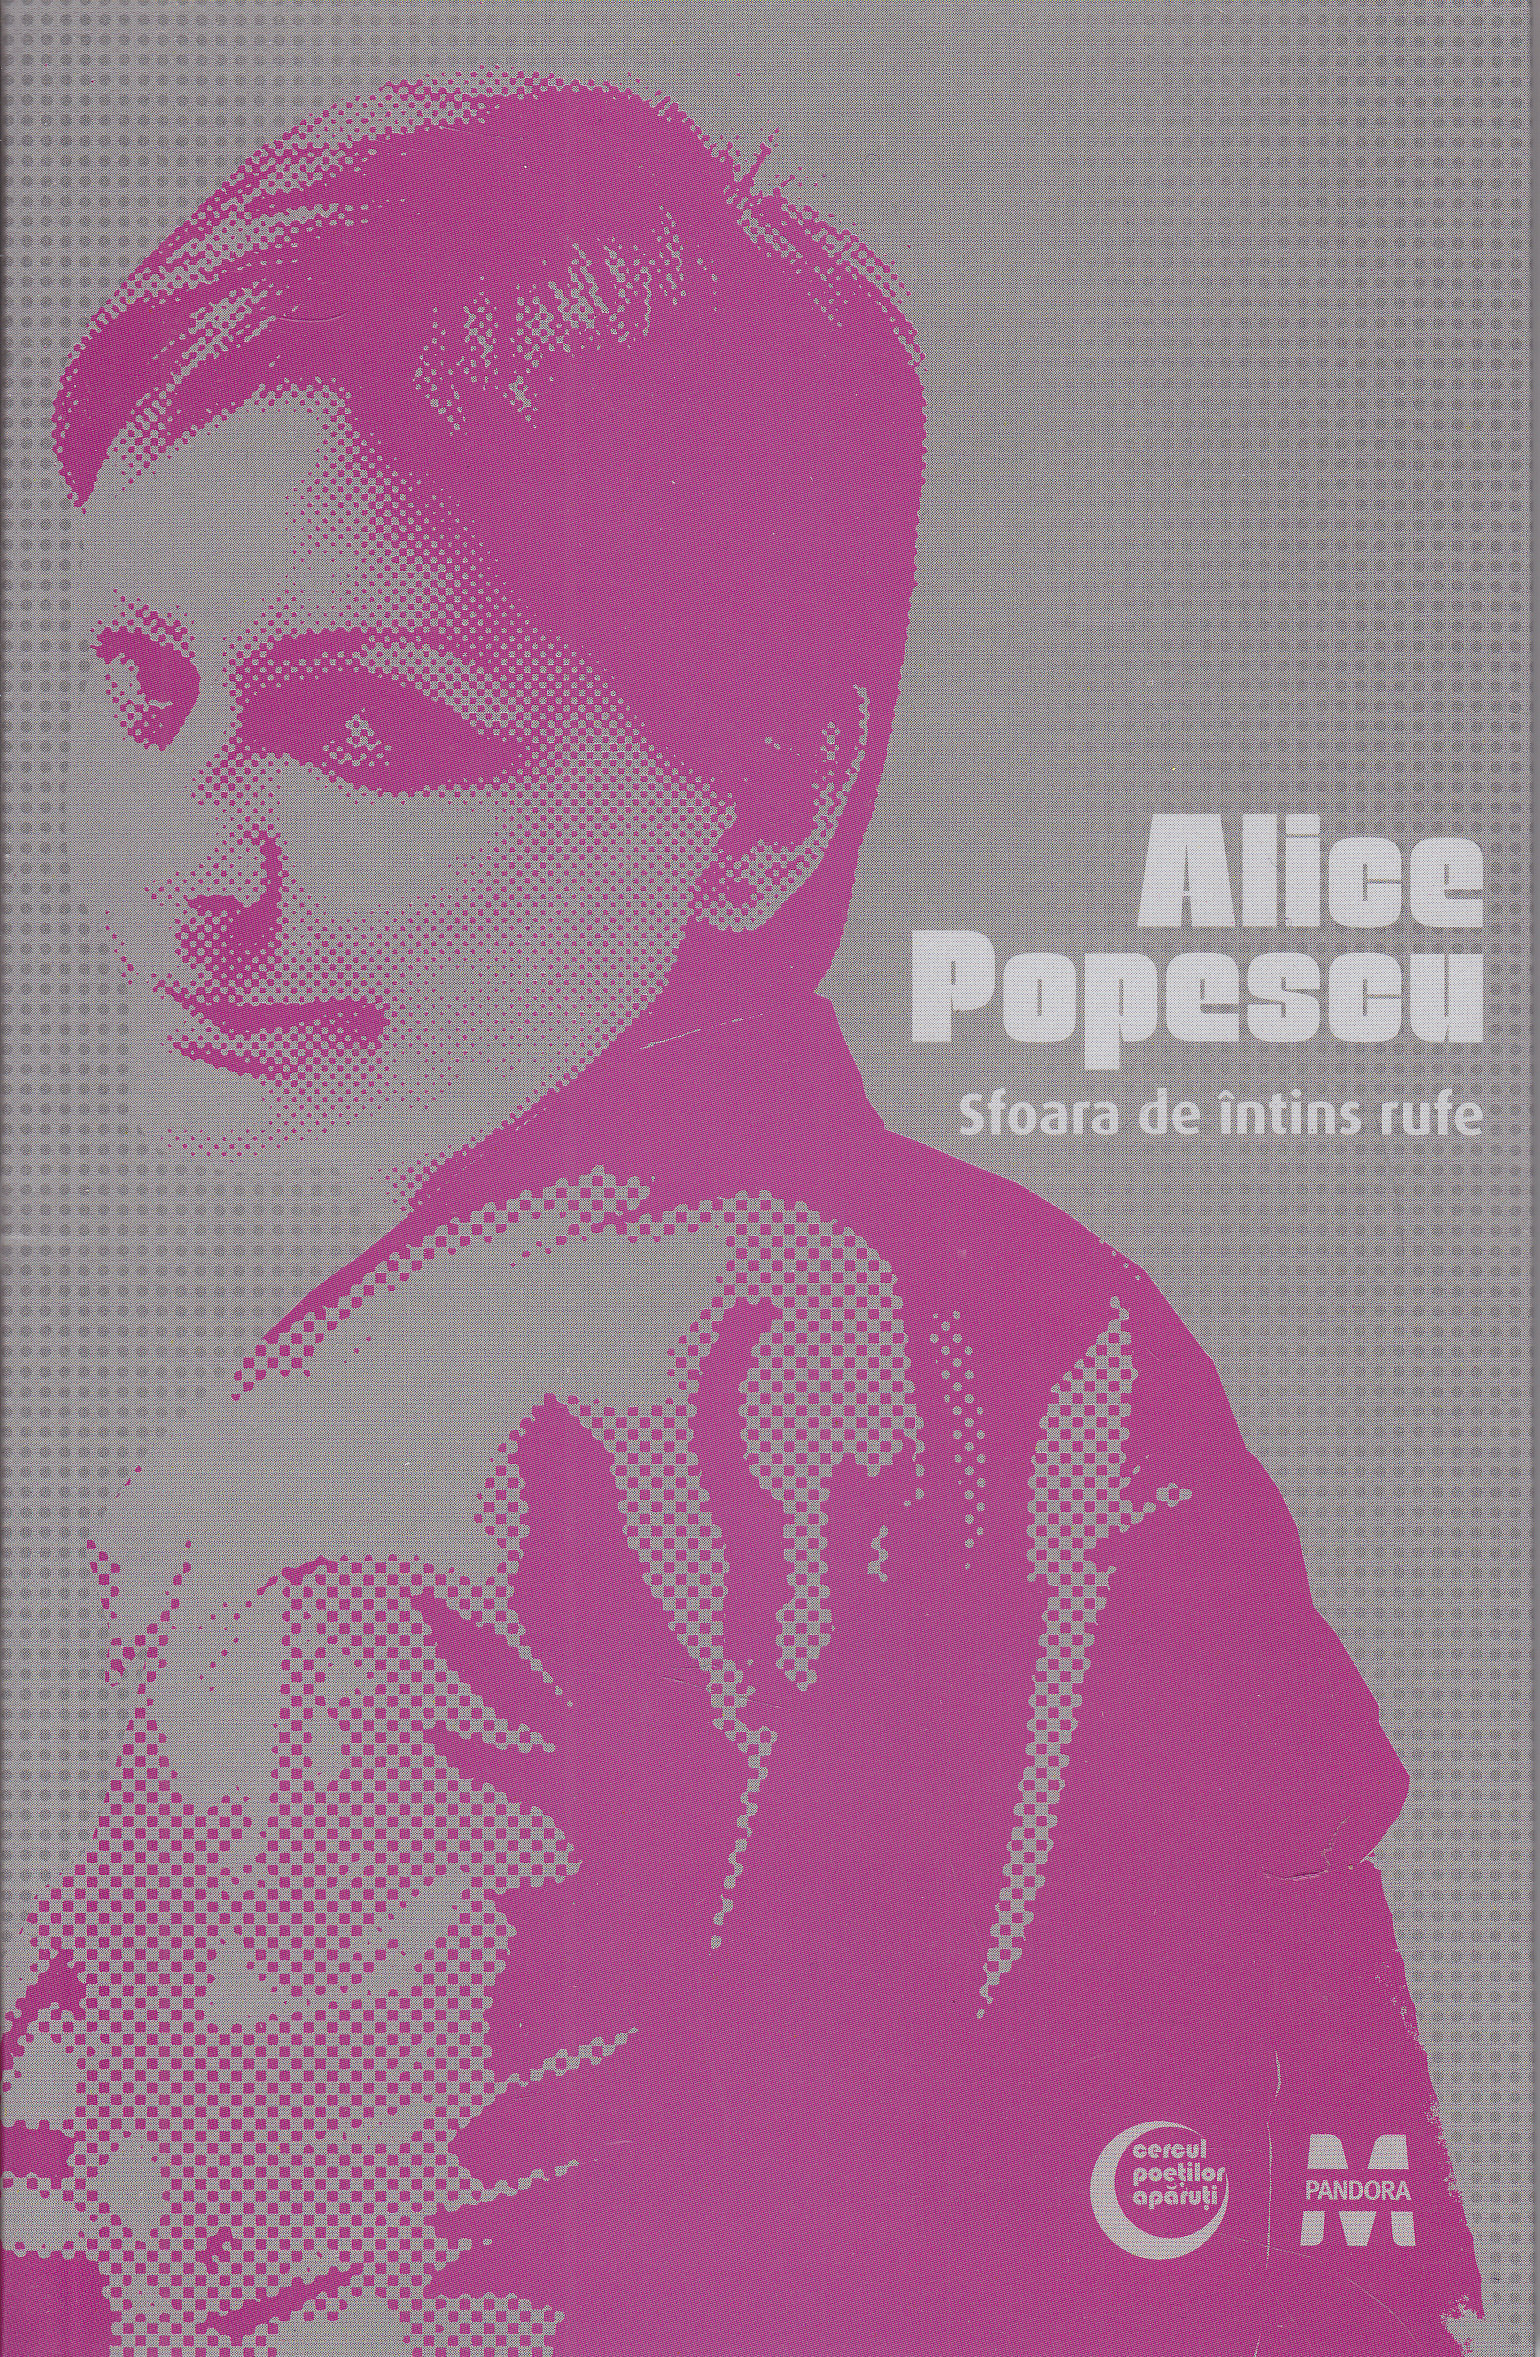 Sfoara de intins rufe - Alice Popescu